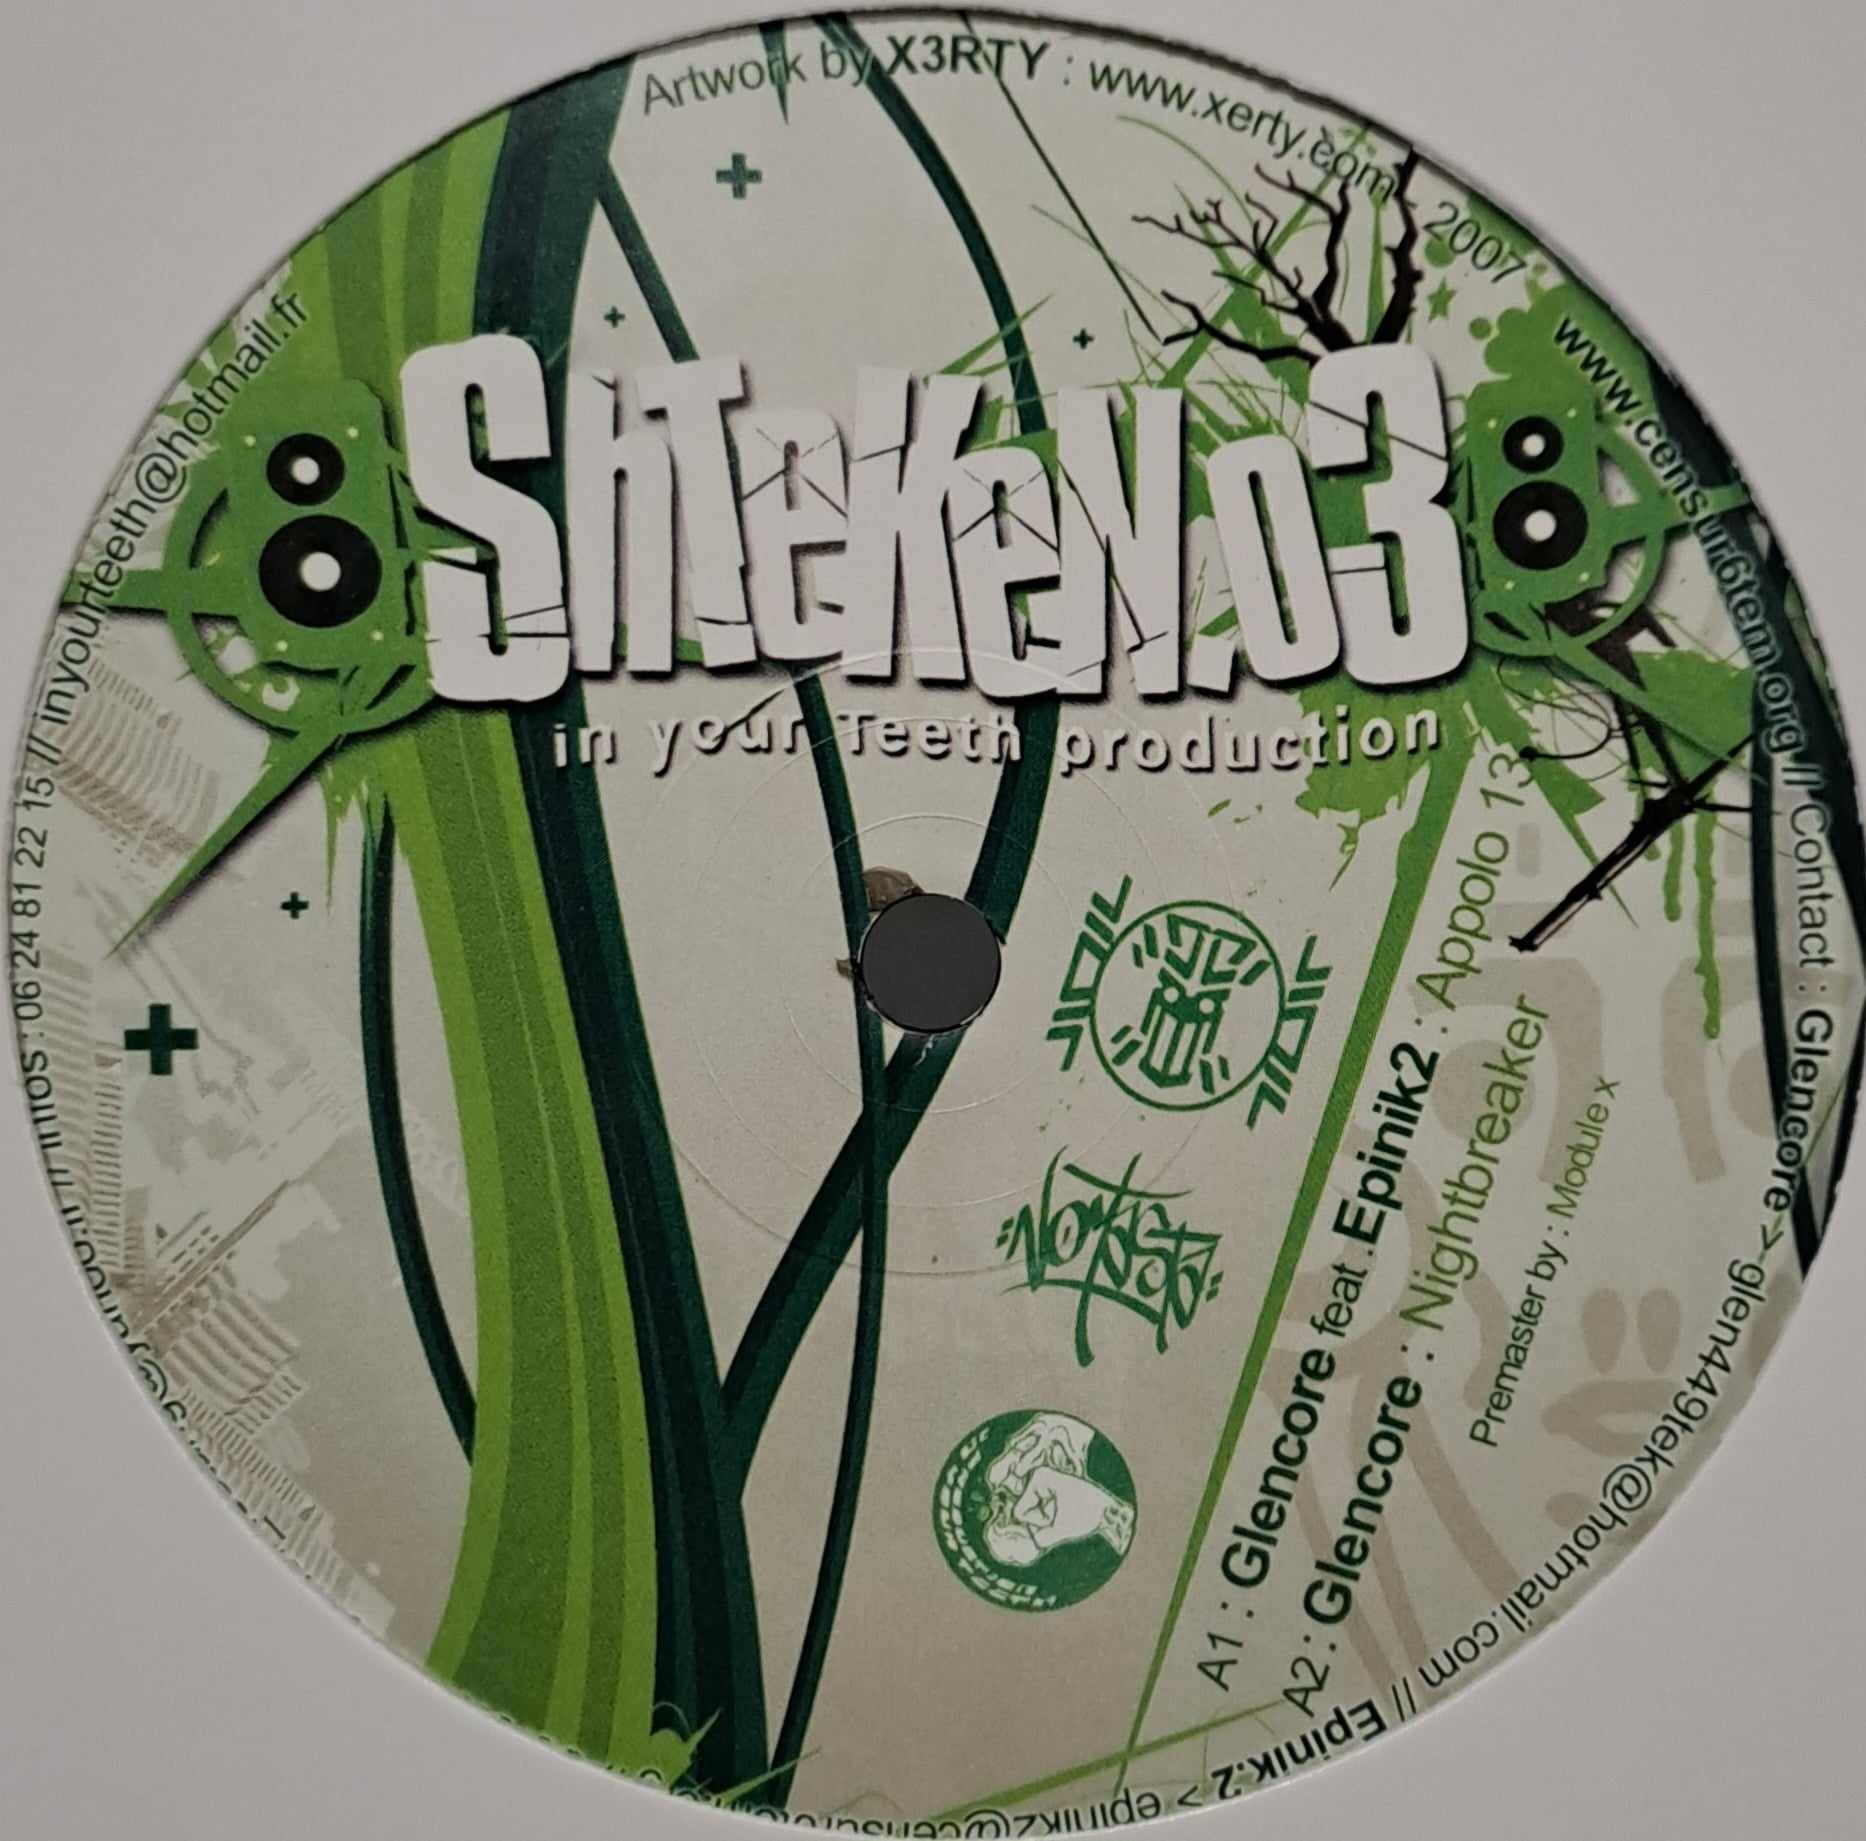 Shteken 03 (toute dernière copie en stock) - vinyle freetekno